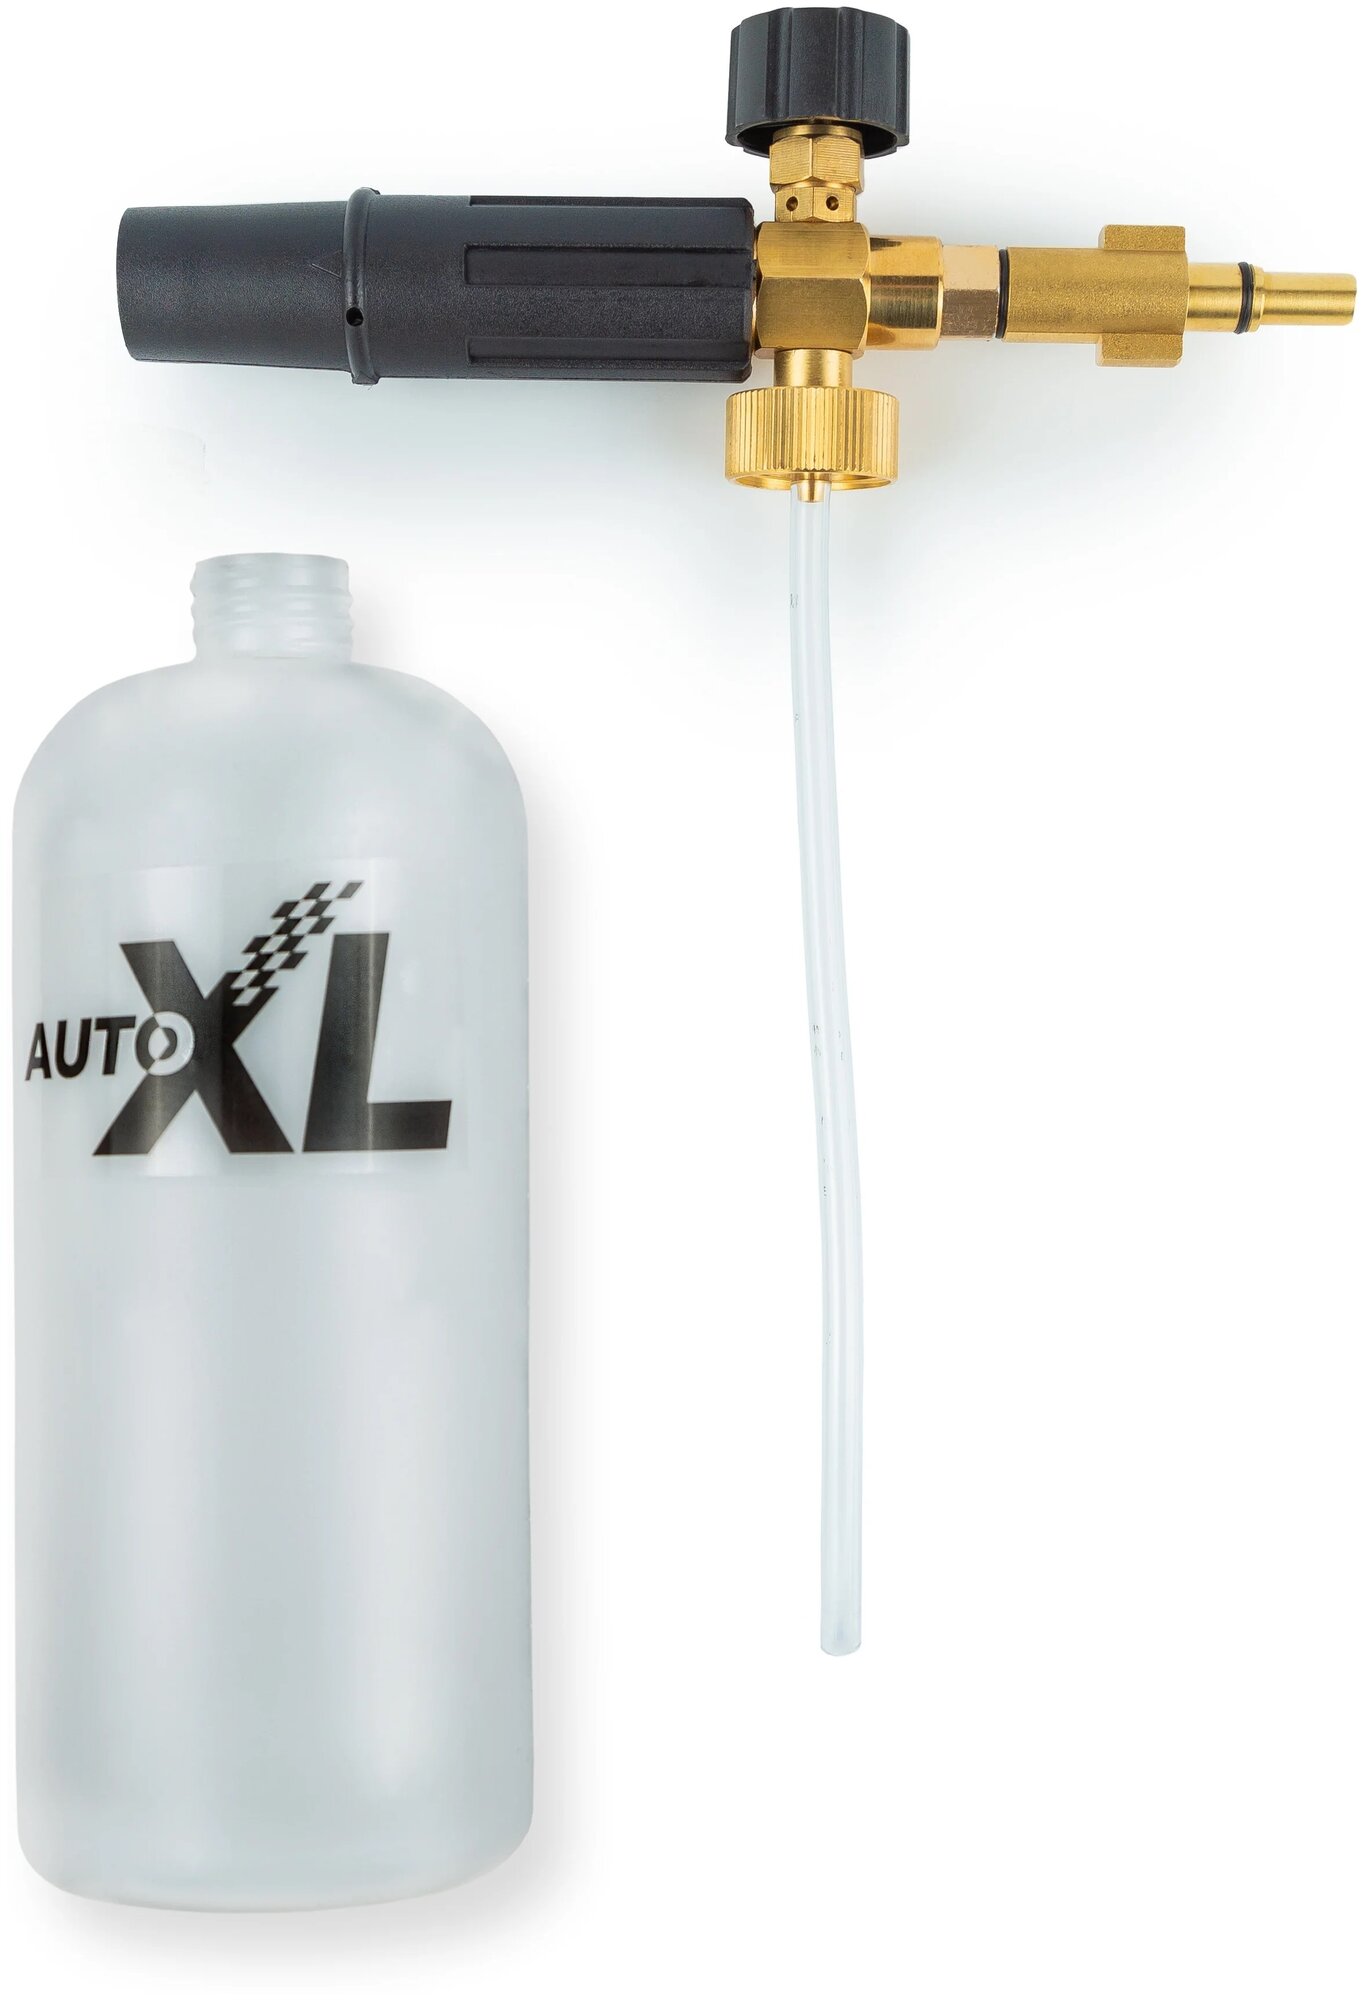 Пенообразователь AutoXL Foam B, для моек высокого давления Bosch, Black&Decker - фотография № 2